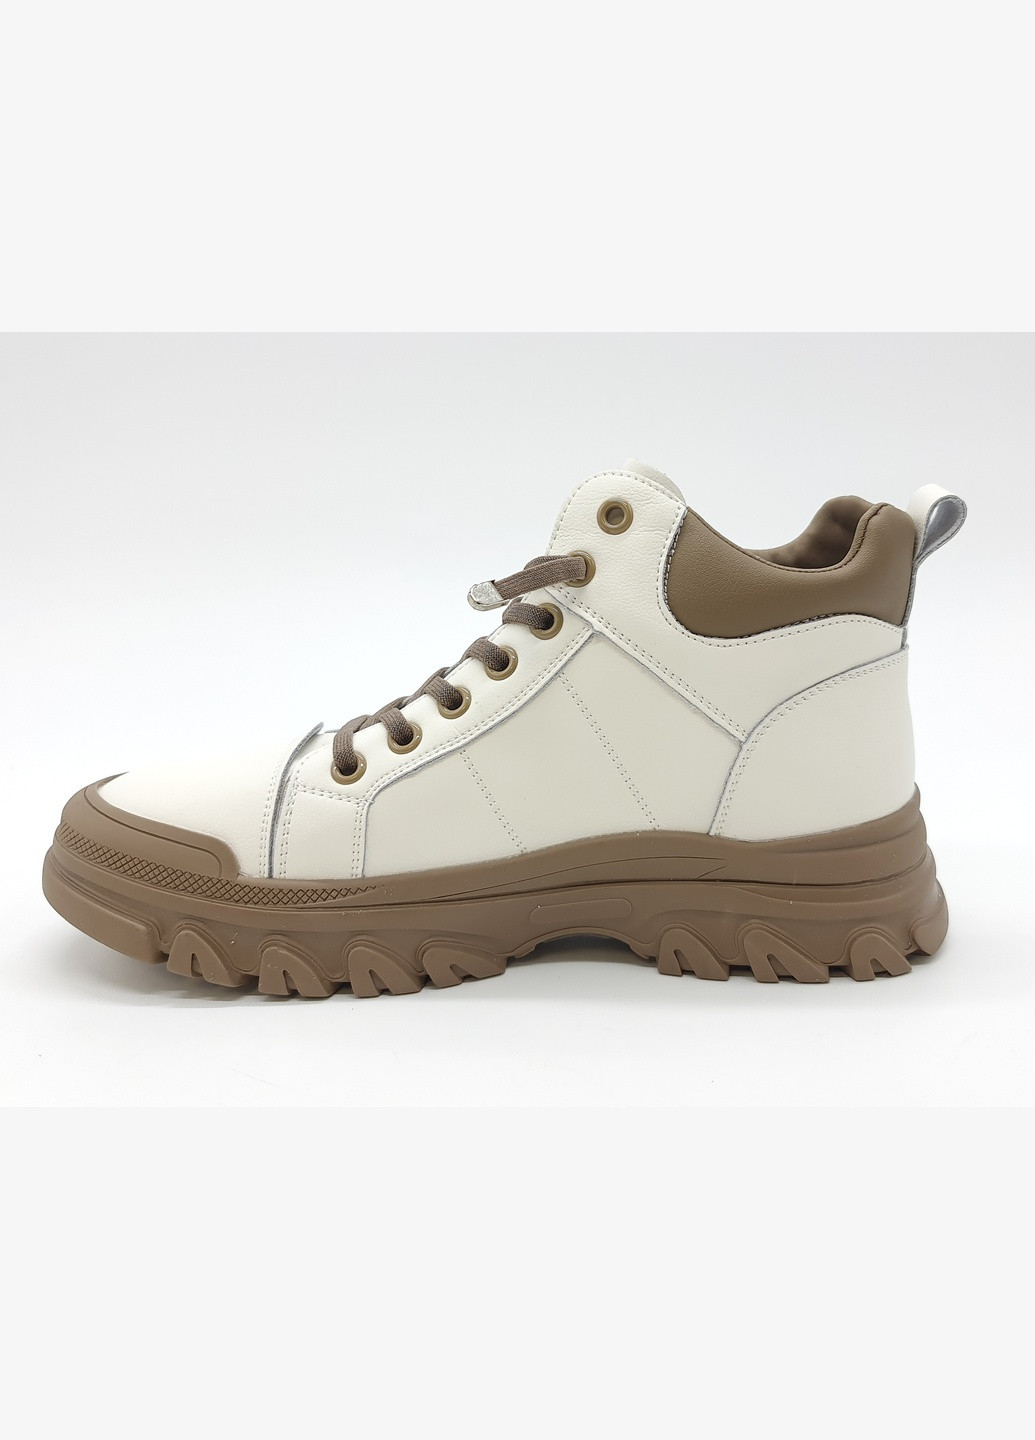 Осенние женские ботинки белые кожаные l-10-6 23 см (р) Lonza